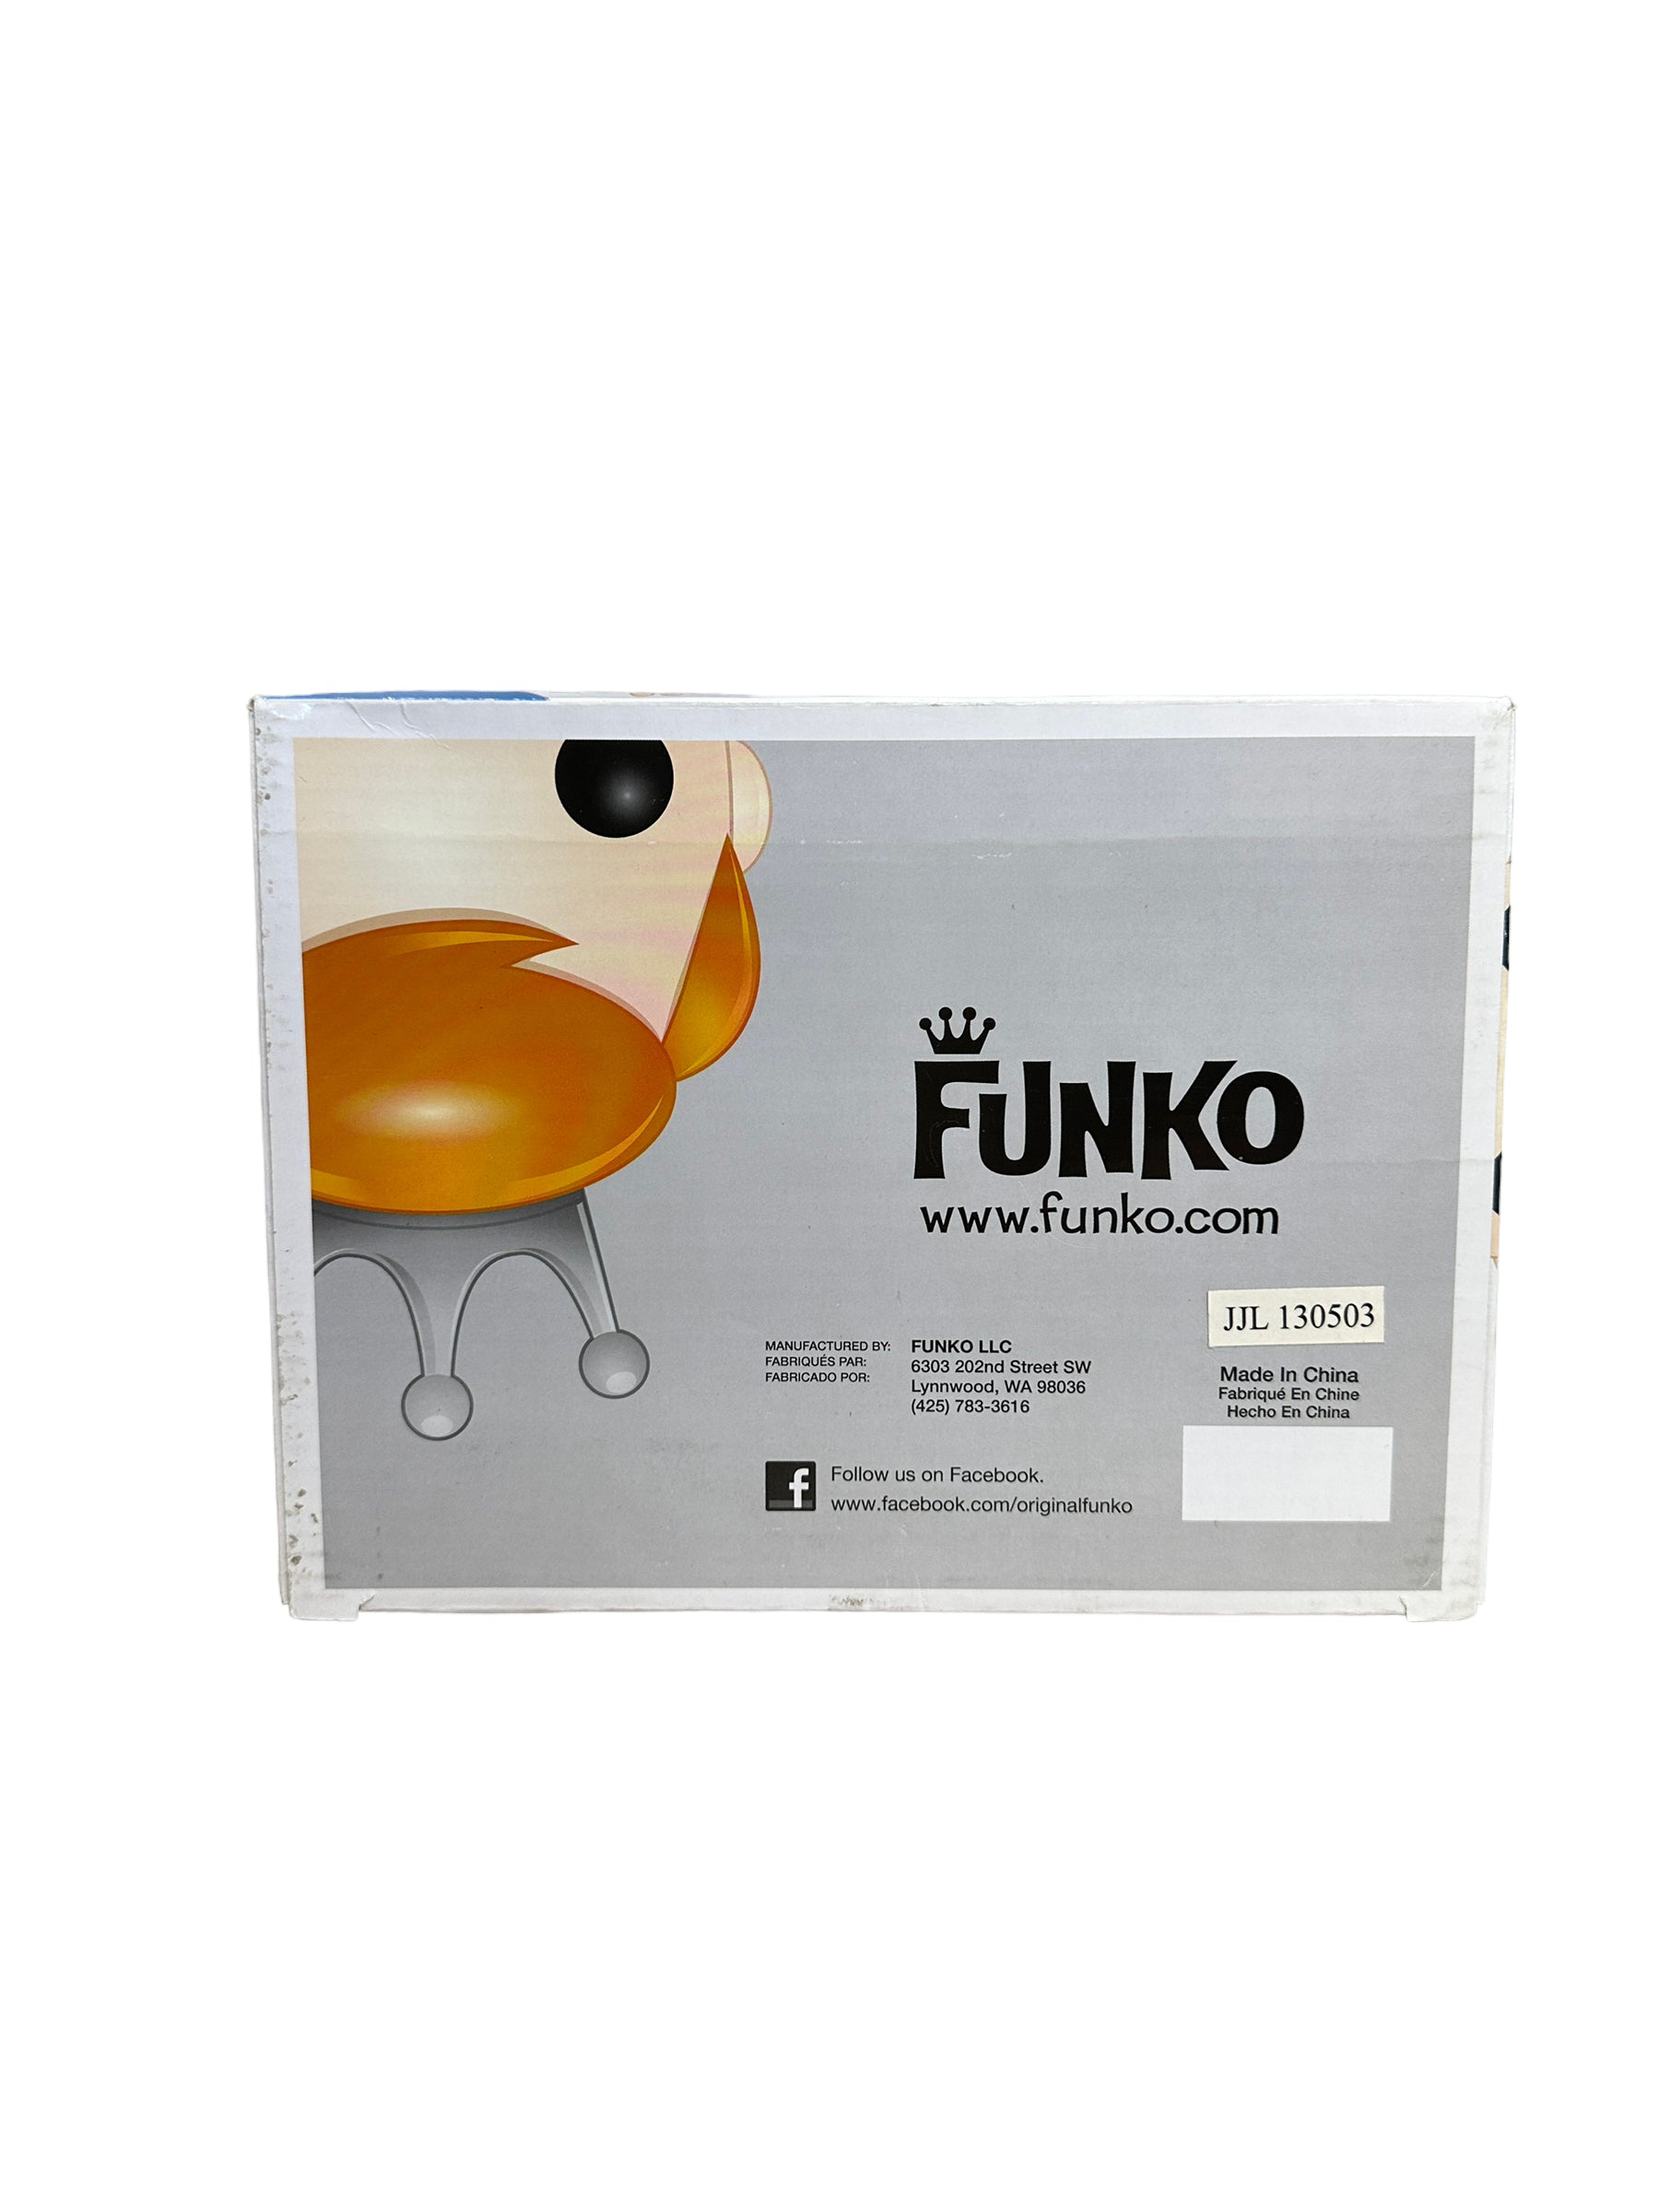 Freddy Funko Black & White 9" Funko Pop! - SDCC 2013 Exclusive LE240 Pcs - Condition 7/10